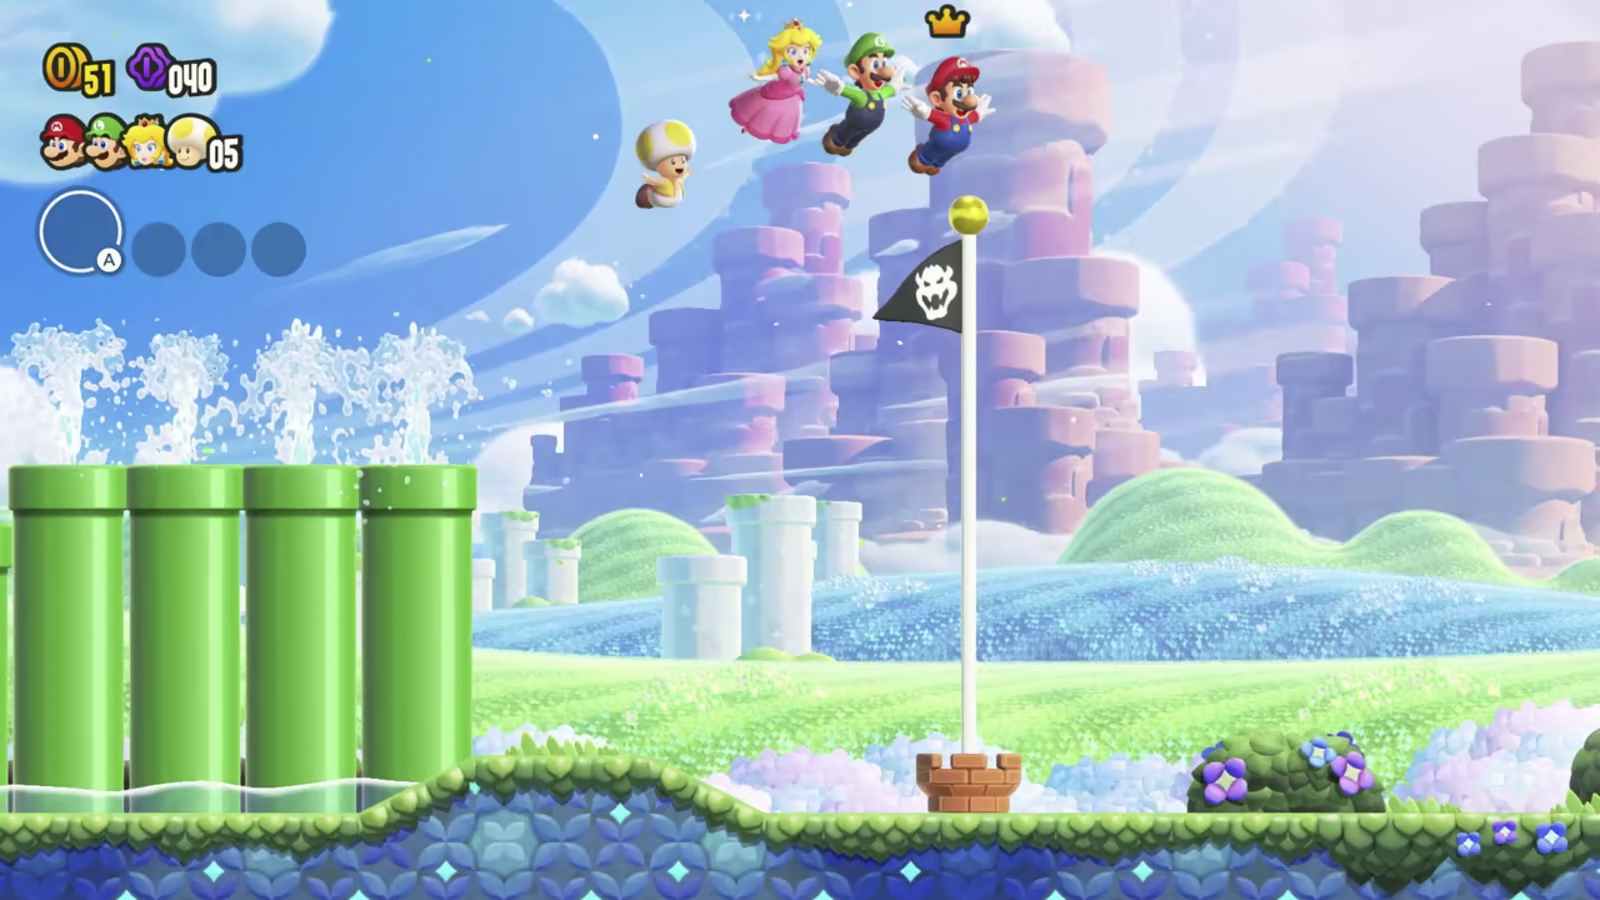 Yellow Toad, Peach, Luigi und Mario fliegen in Super Mario Bros. Wonder über die Flagge